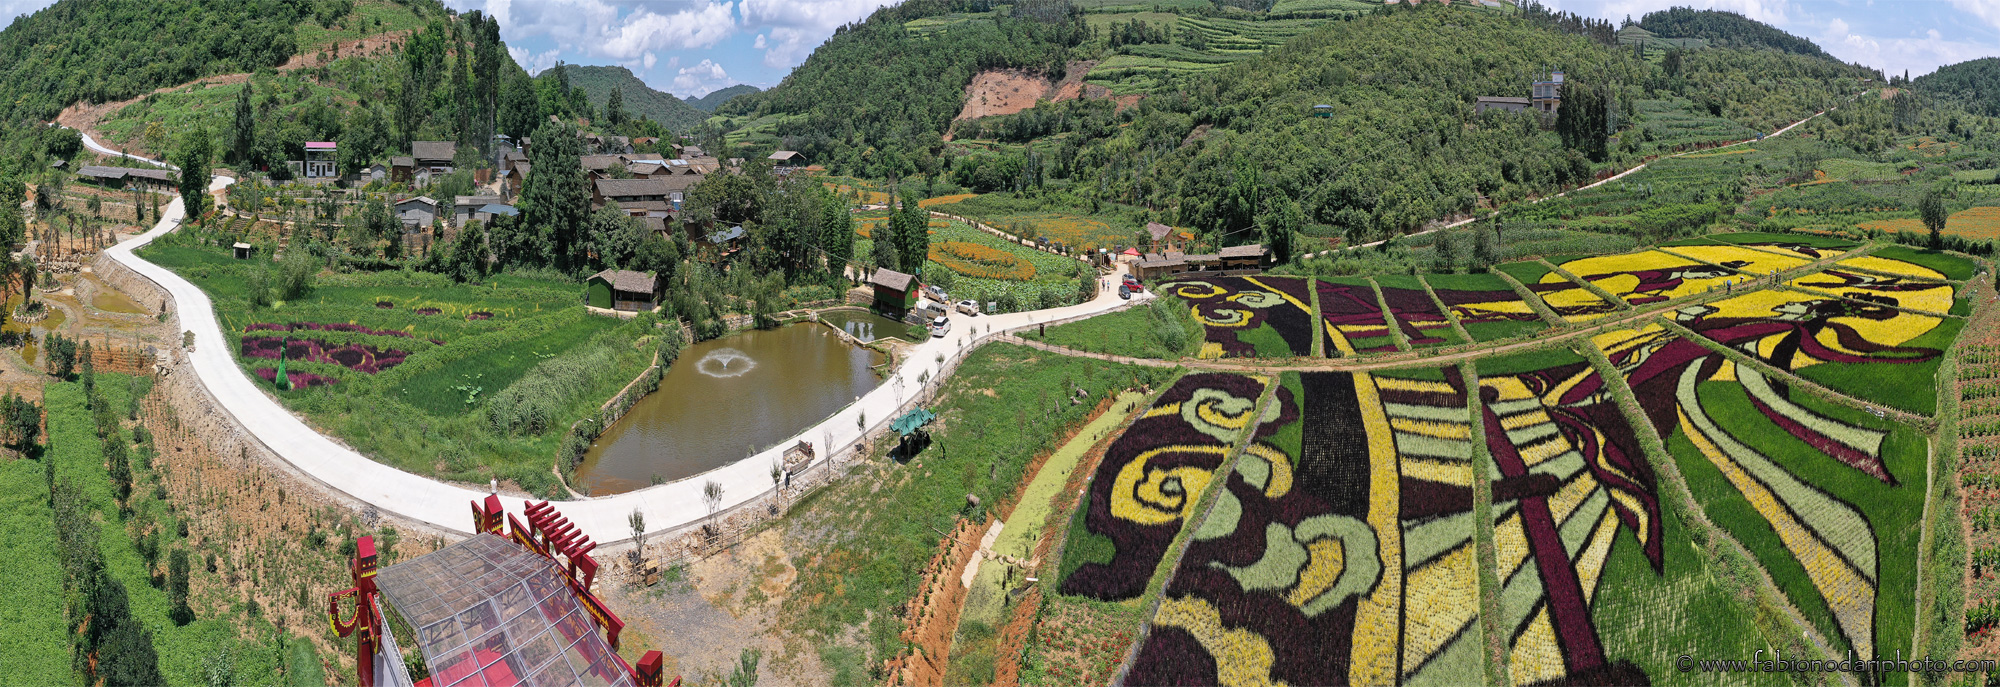 Aerial view of Maidichong in Yiliang, Yunnan - China